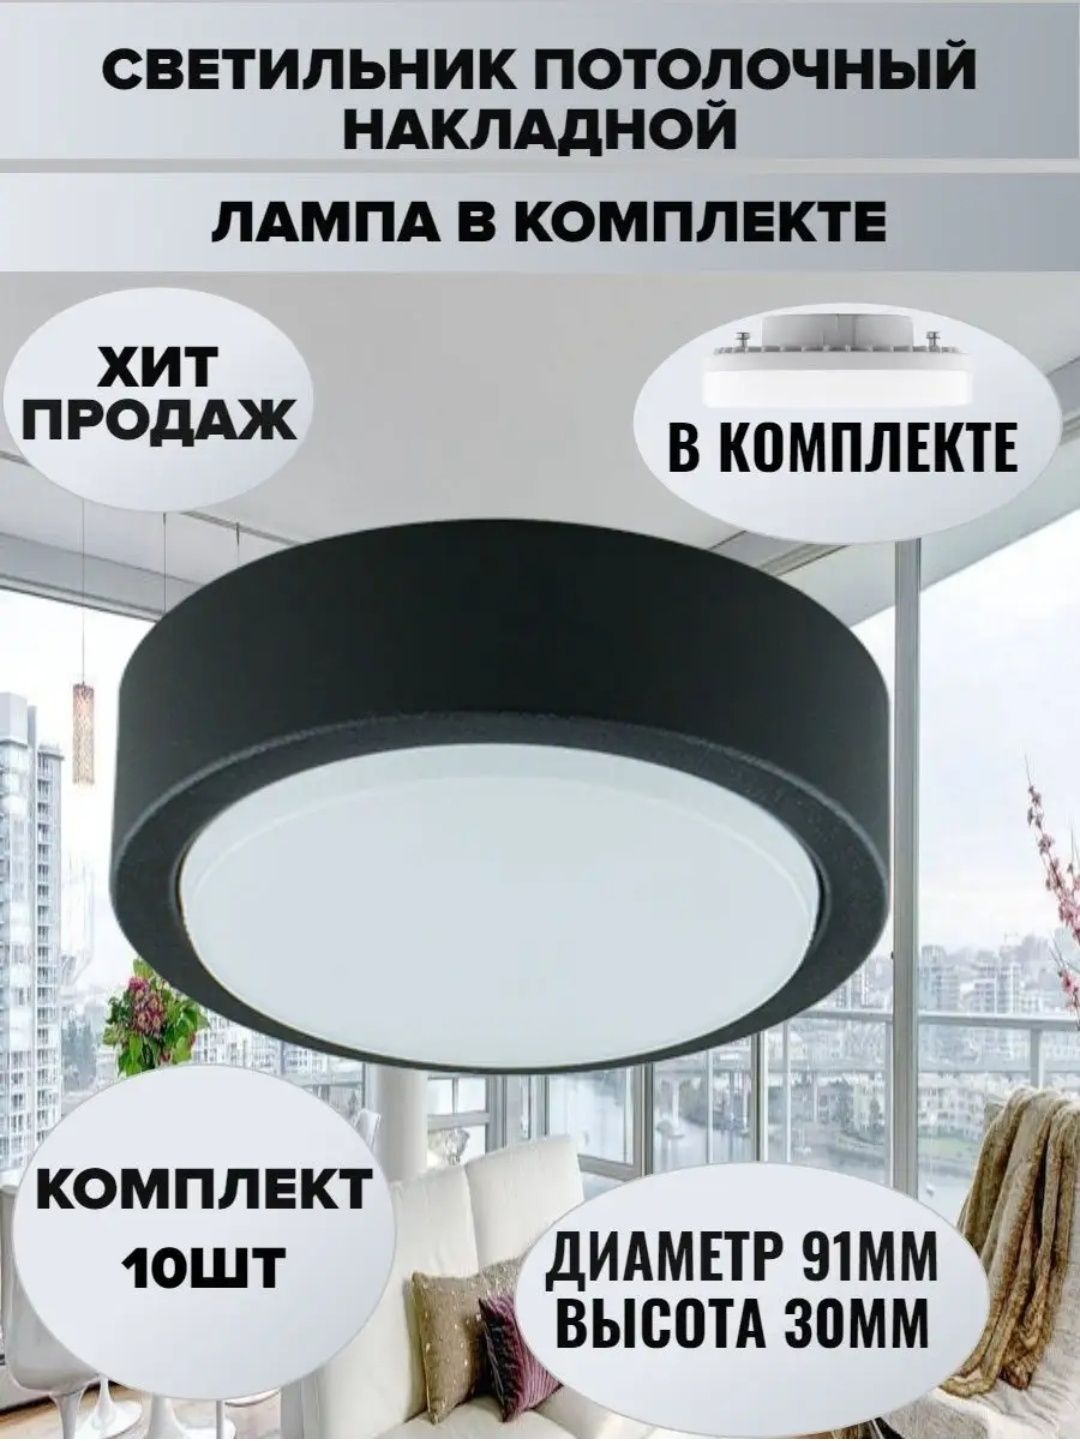 Продаю потолочные светильники